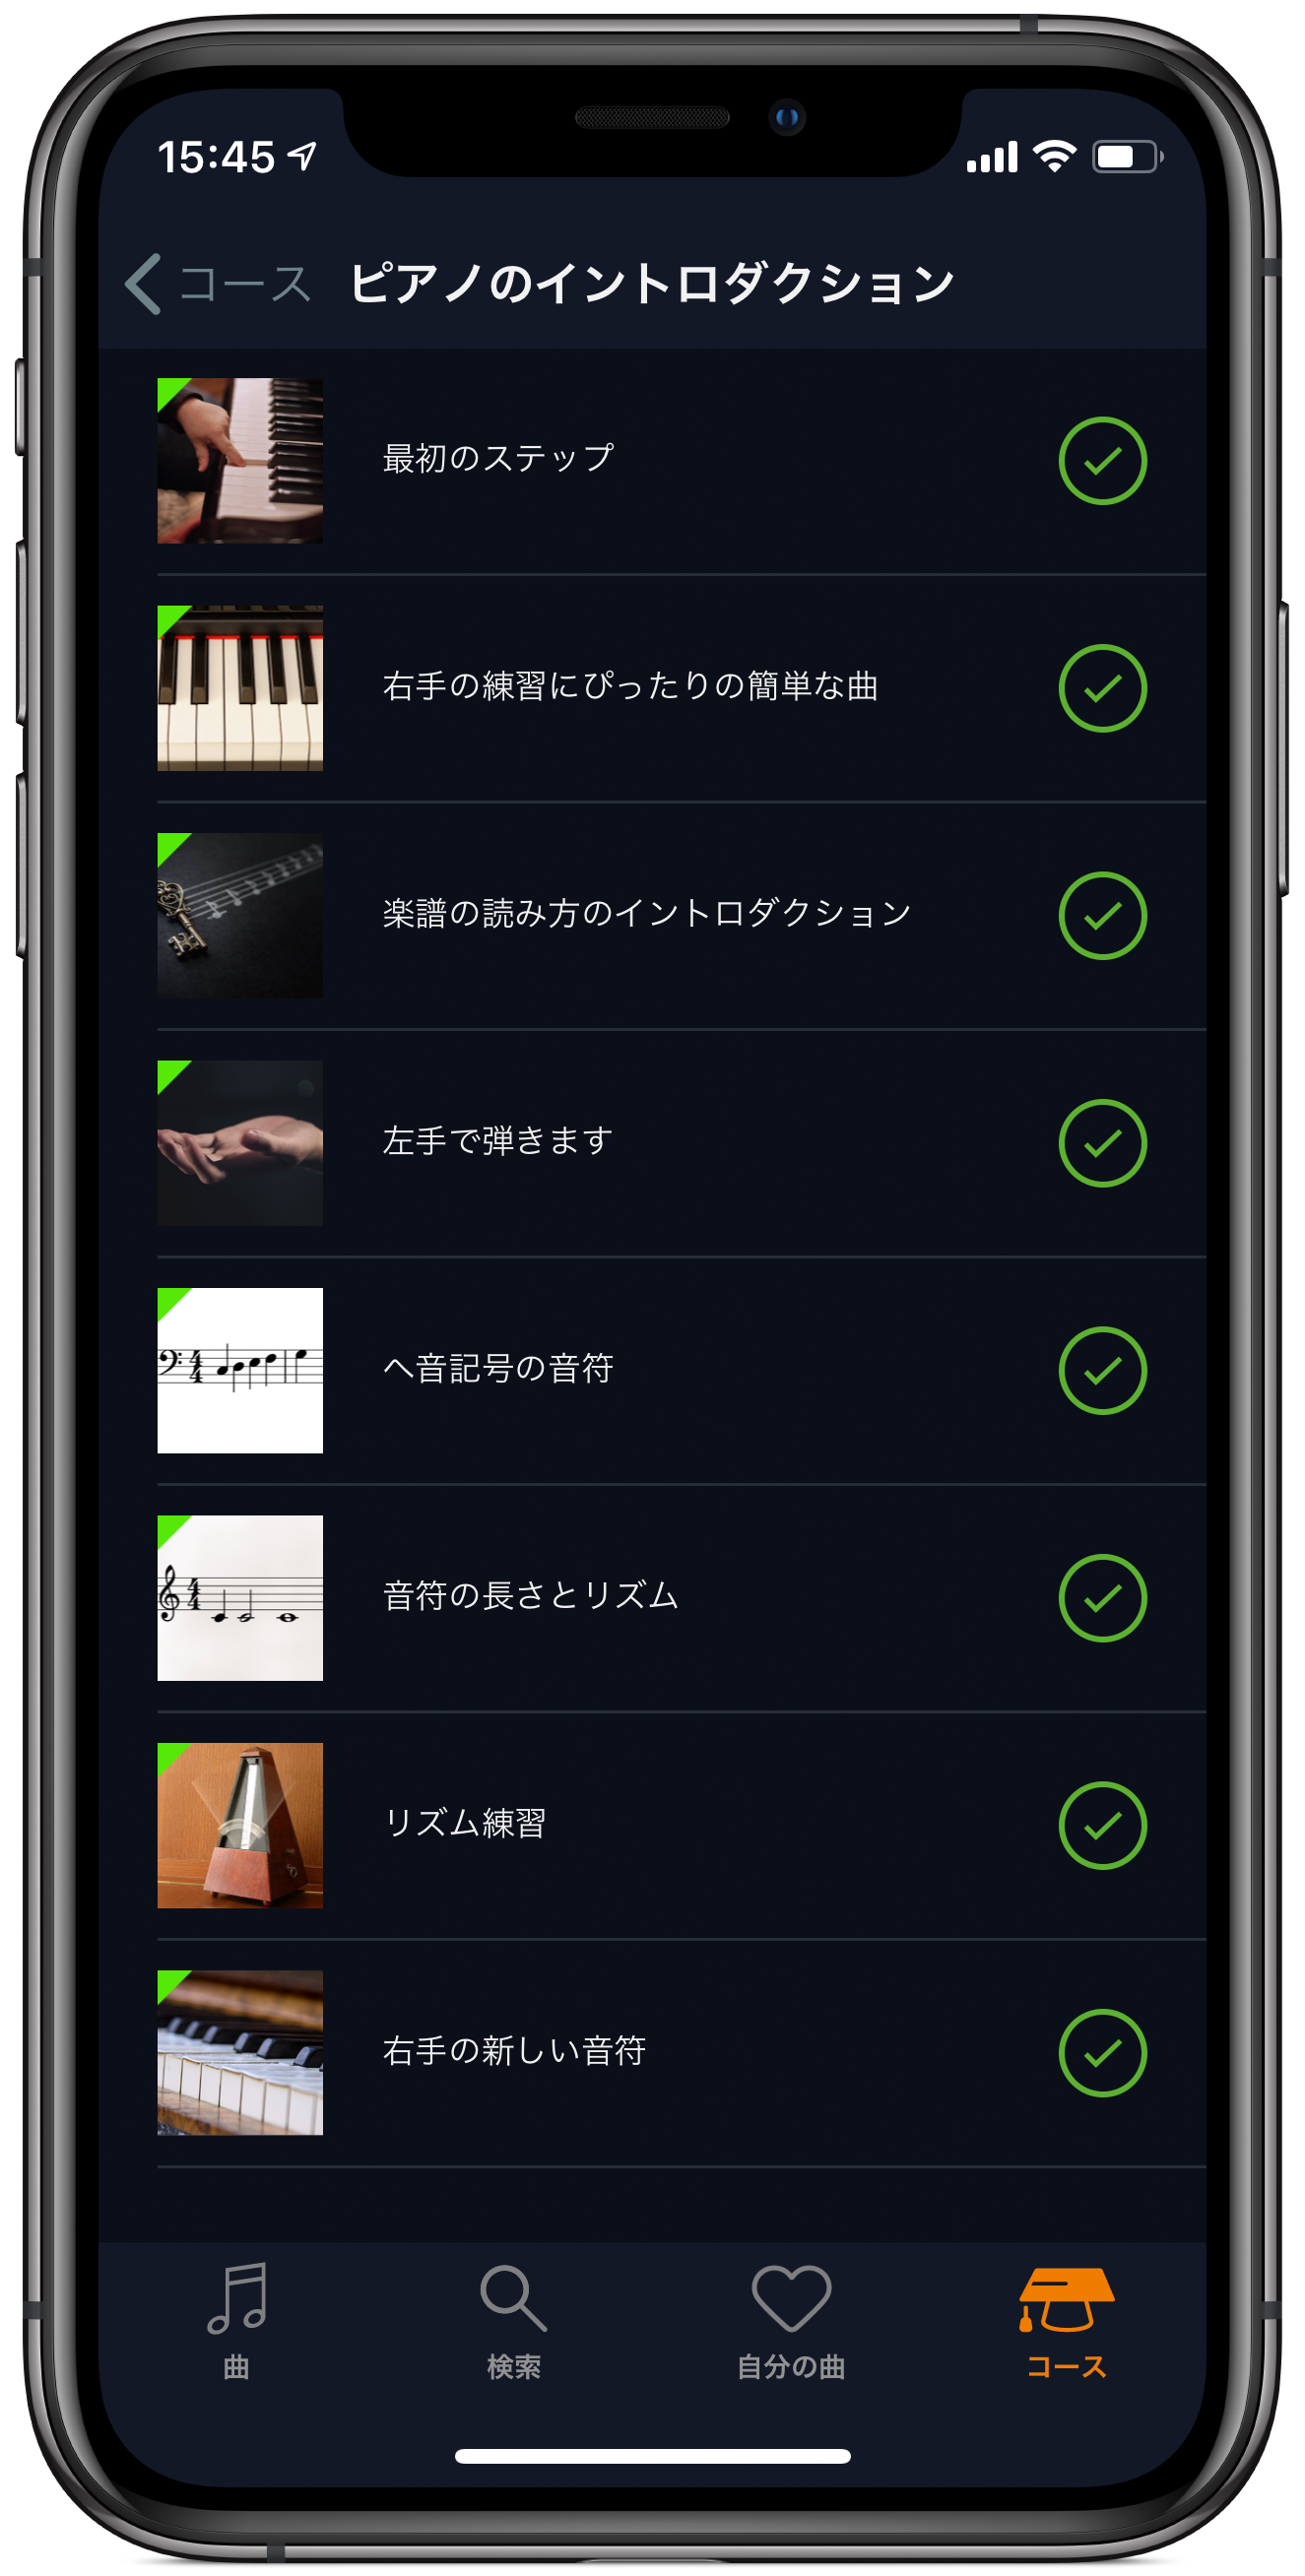 ドイツ ベルリン発 音楽を学ぶ楽しさが凝縮された 世界で500万人以上が利用する 本格ピアノ学習アプリ Flowkey フローキー が日本語に対応 Flowkey Gmbhのプレスリリース